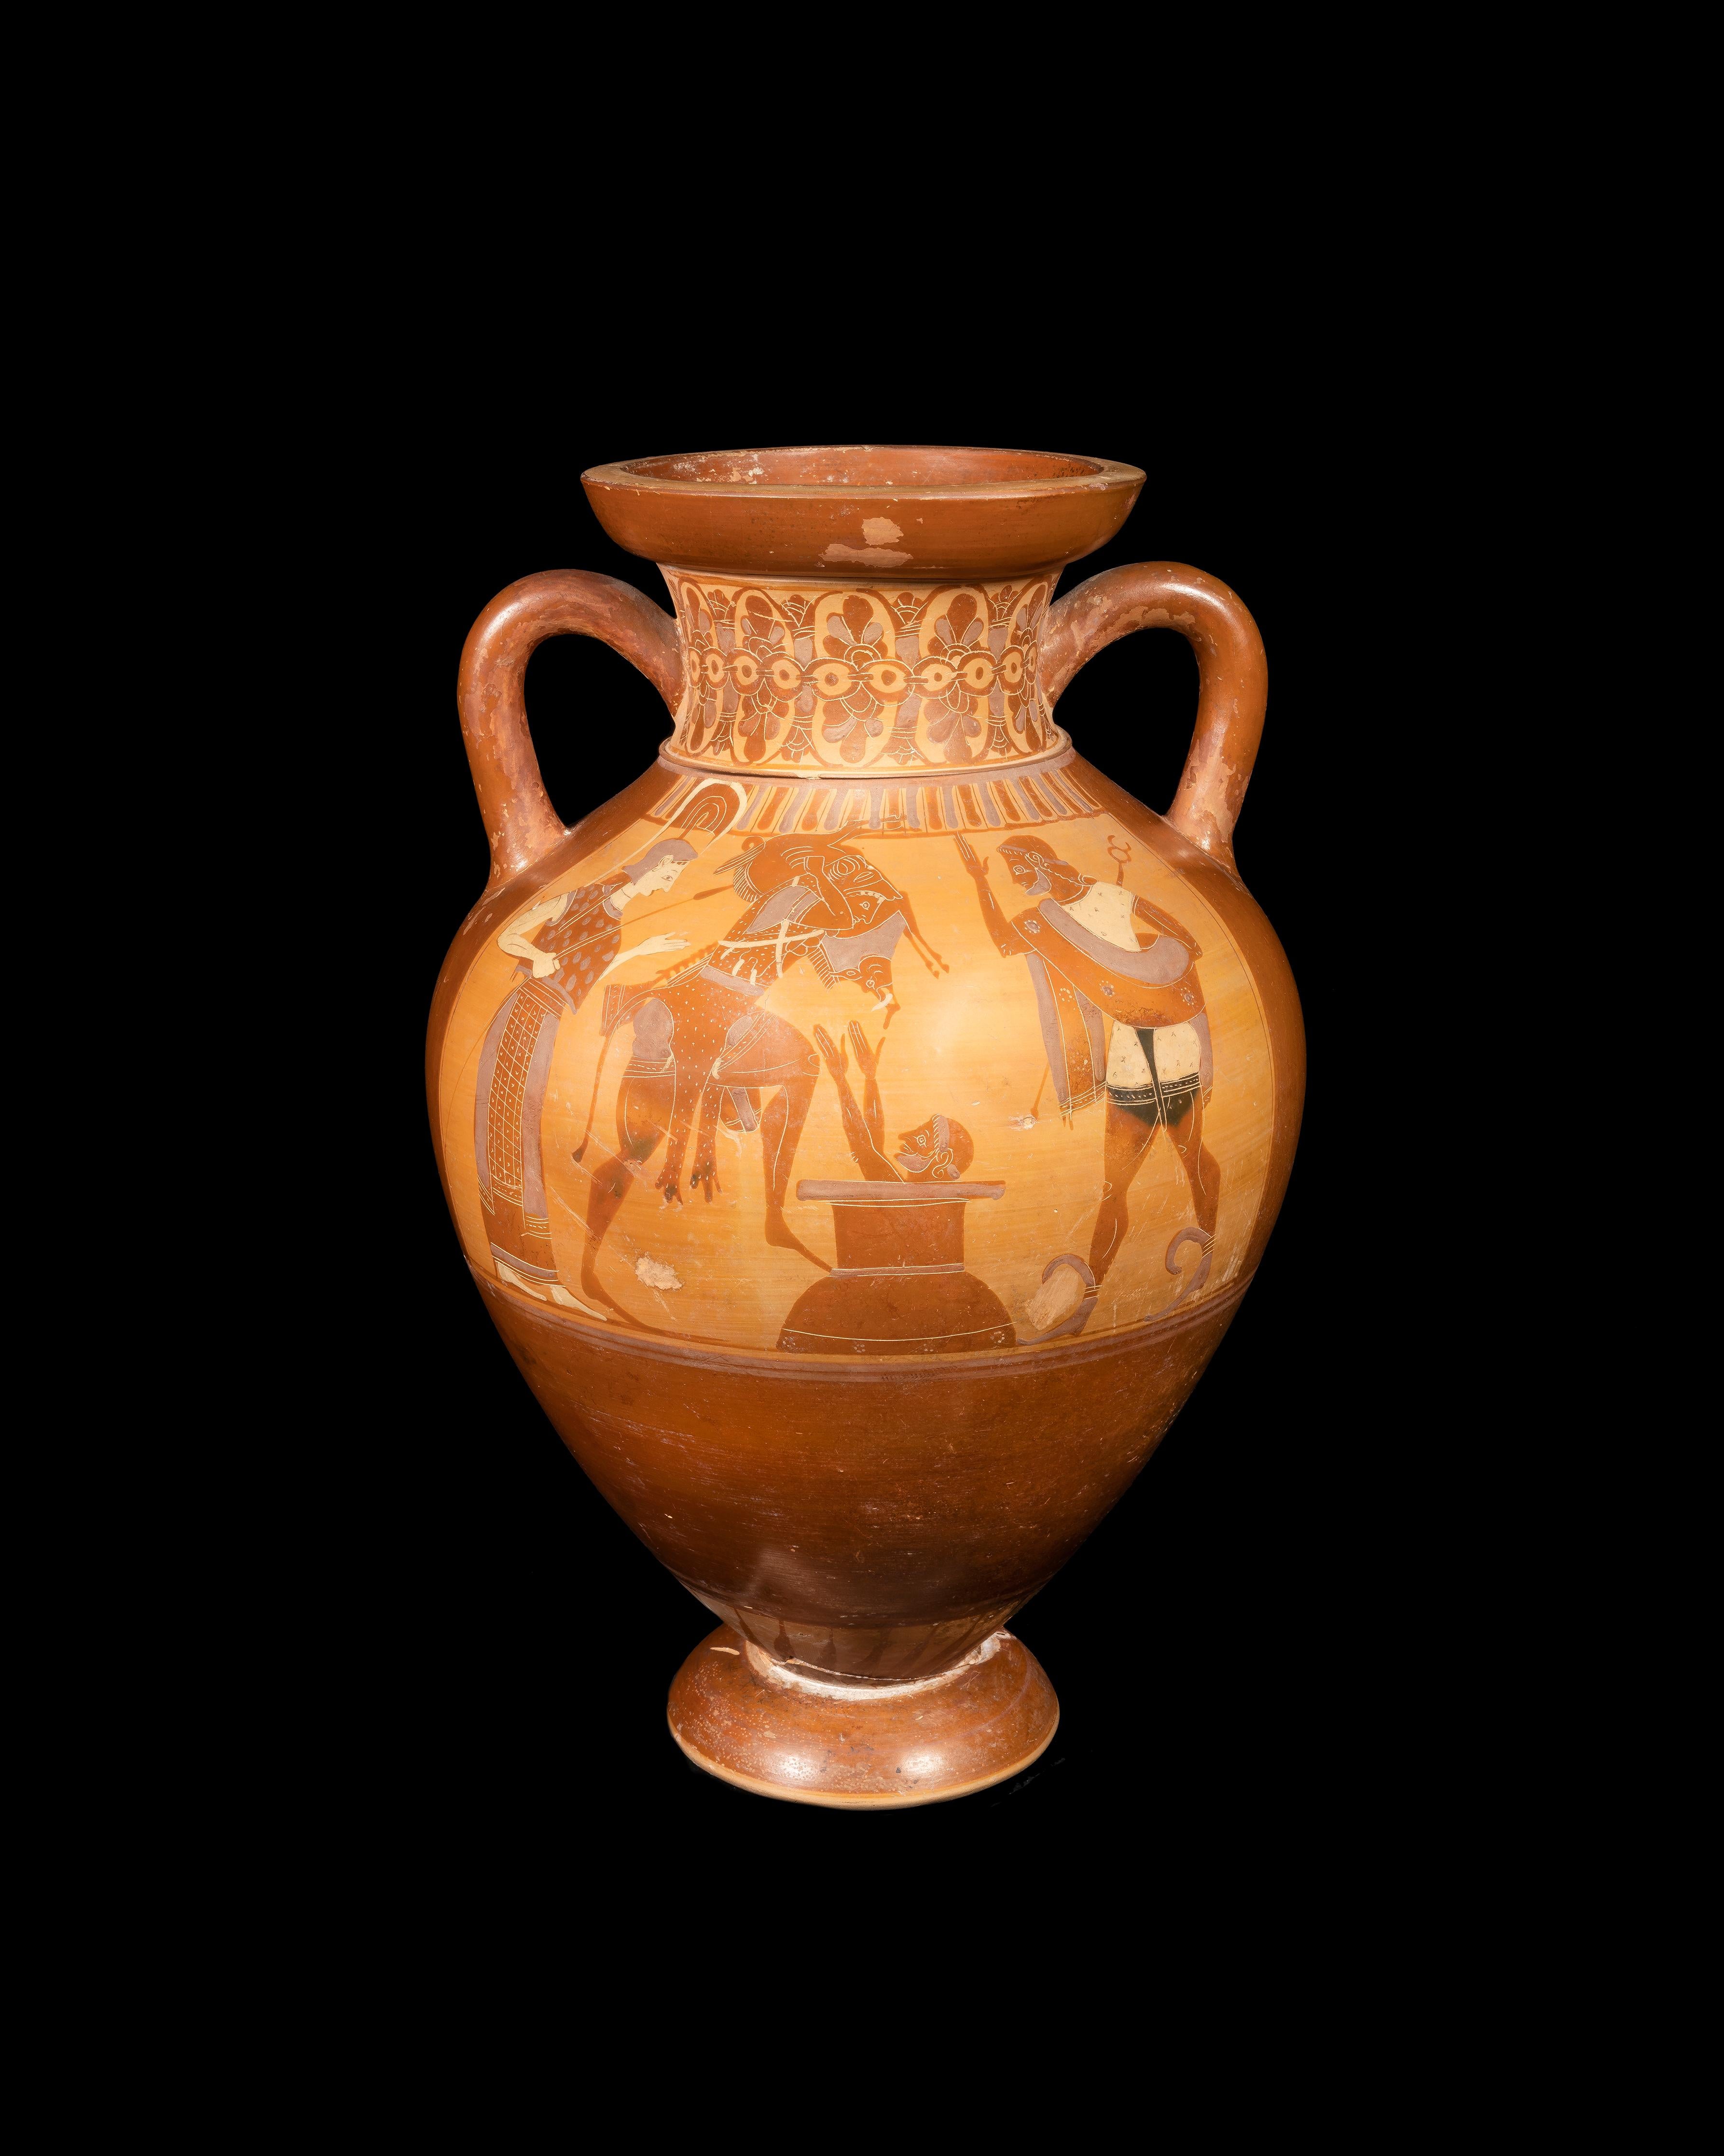 European Attic Black Figure Amphora